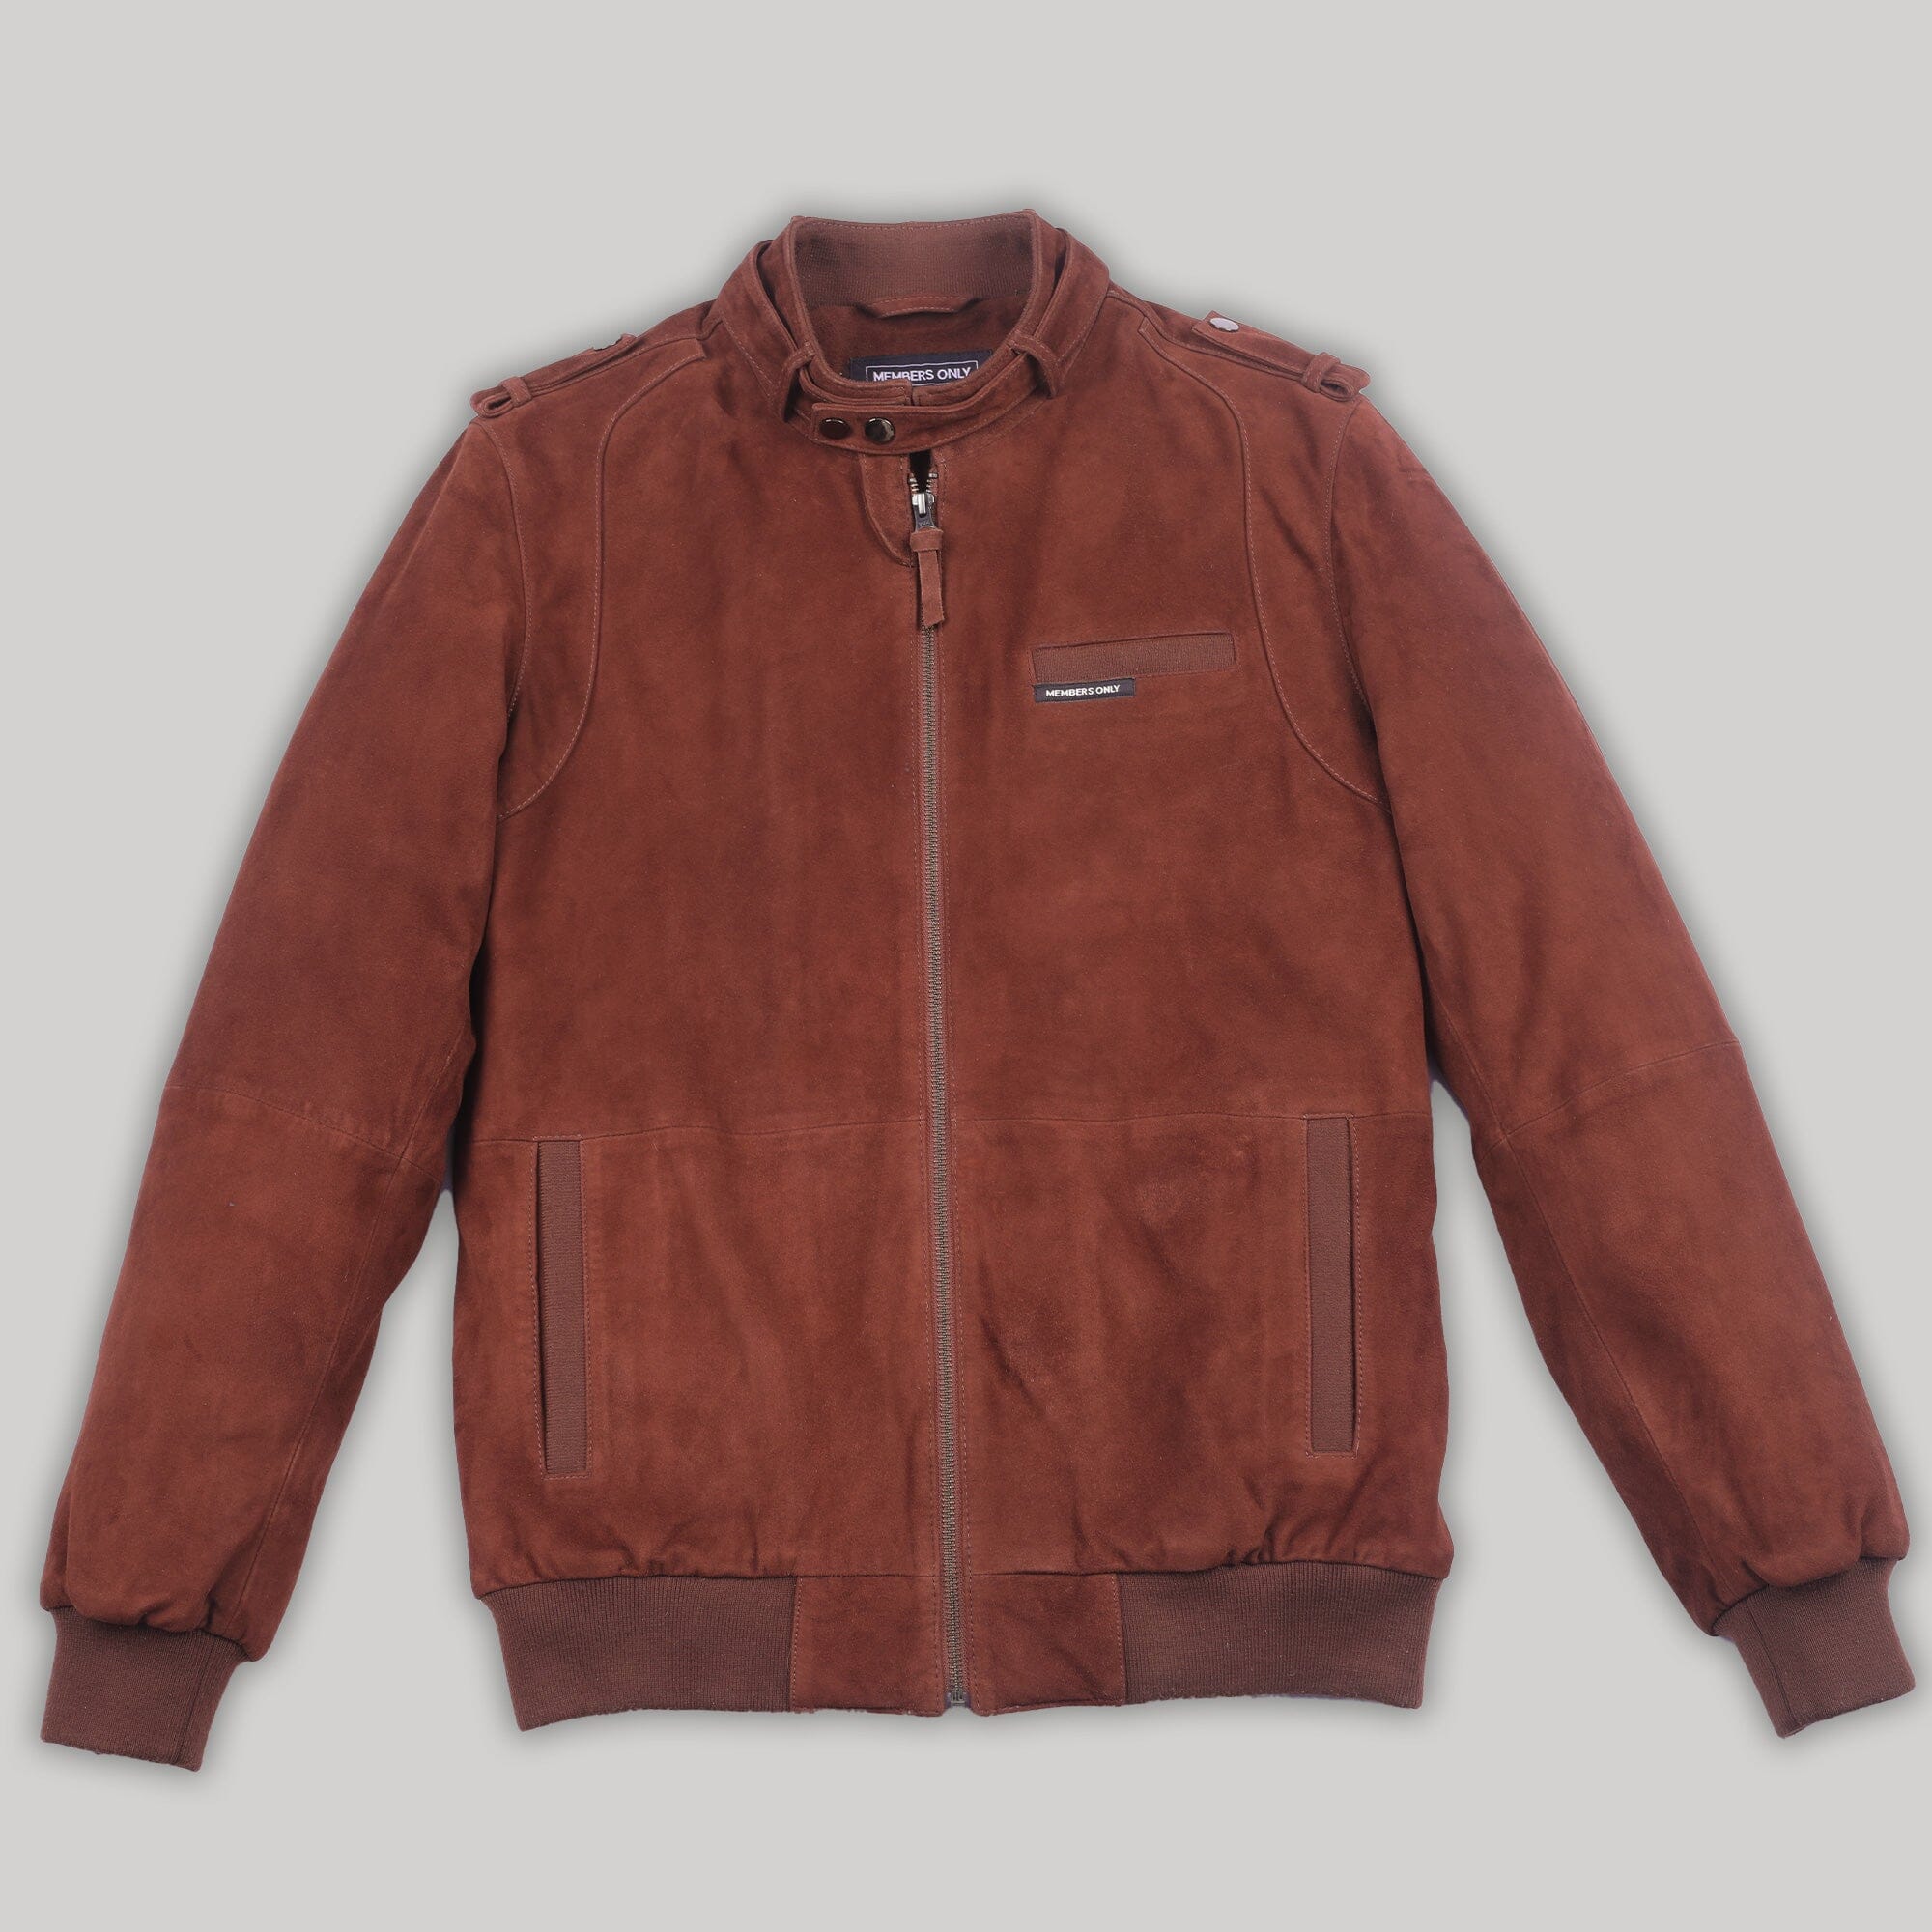 Biker Nick Jonas Suede Jacket - | Celebrities leather jacket, Brown leather  jacket men, Leather jacket